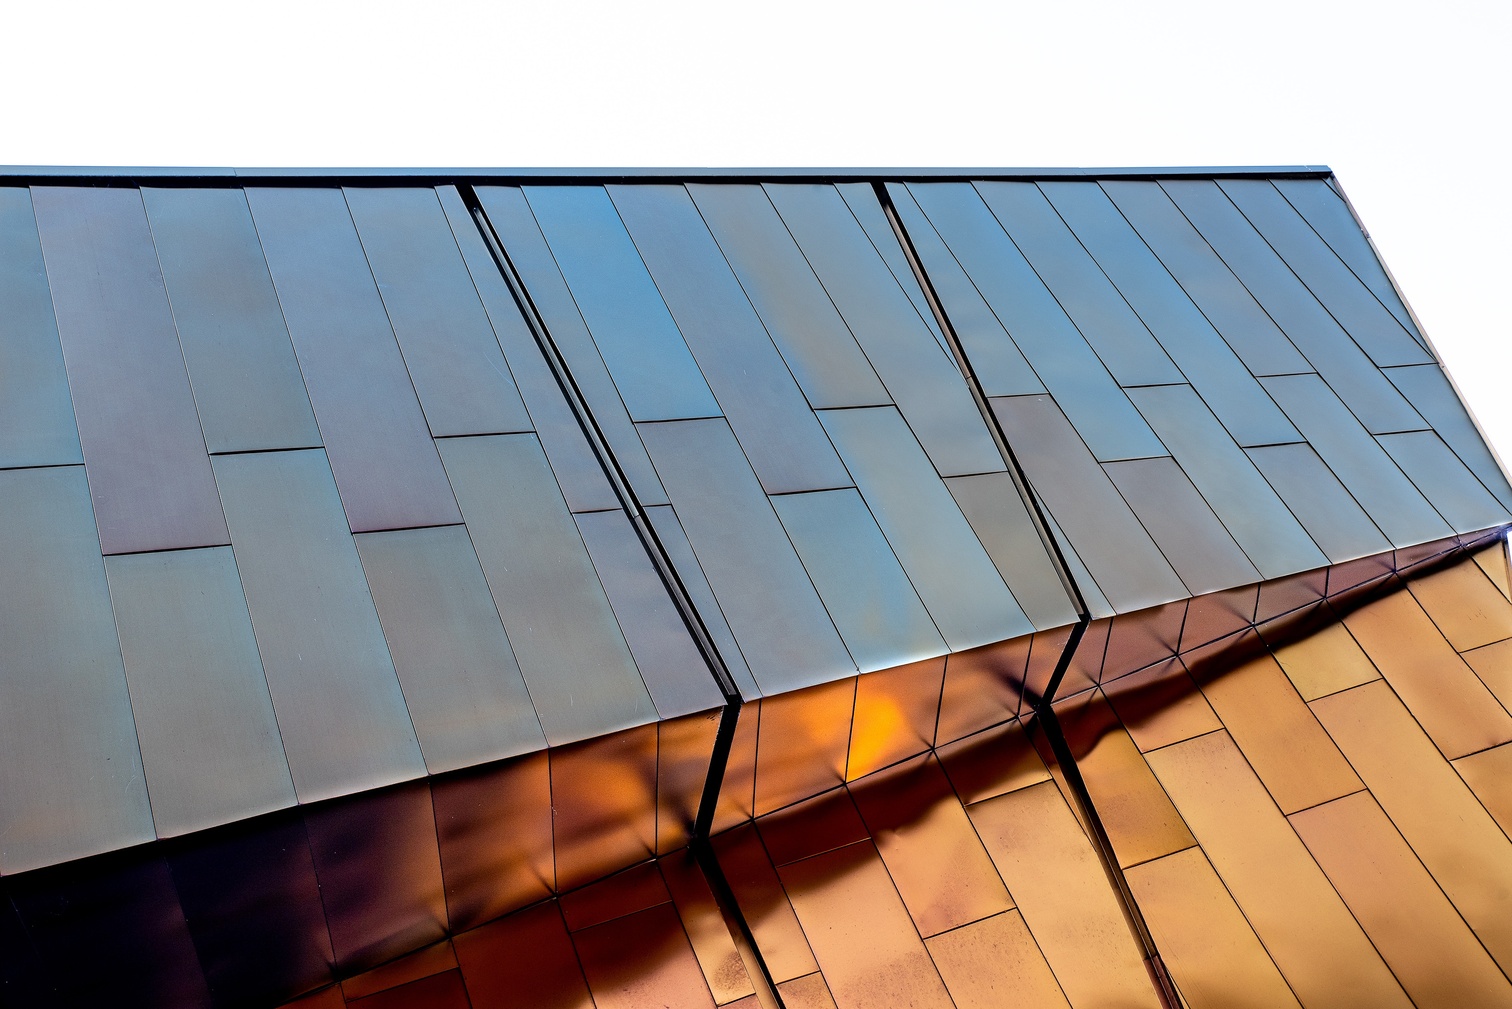 Solar Shingles, dakpannen die zonne-energie opwekken